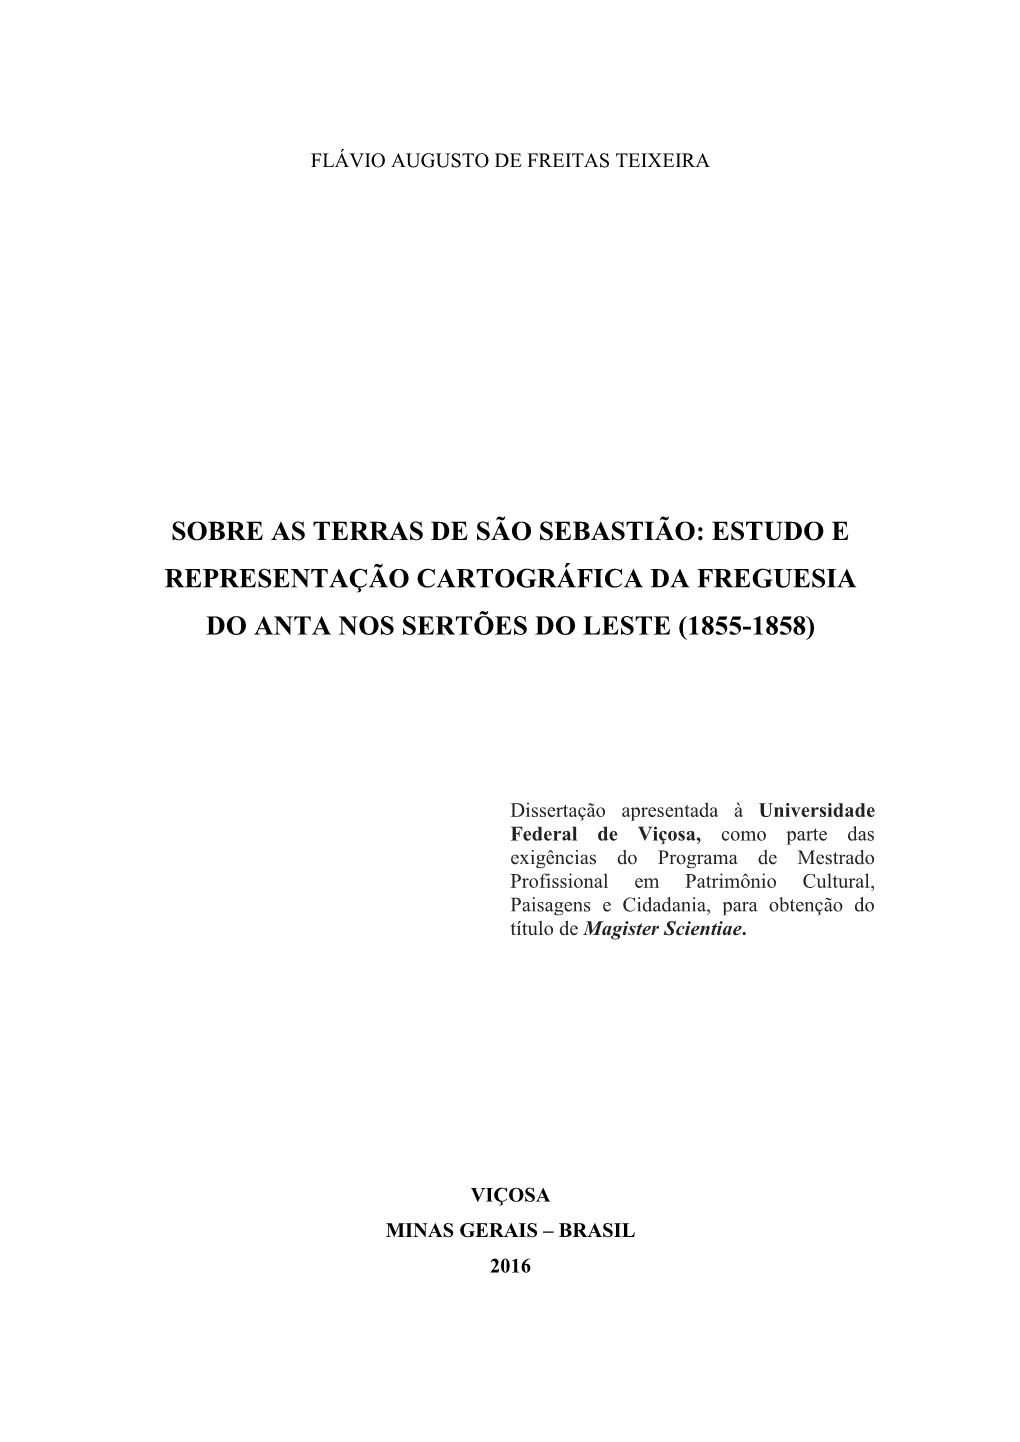 Estudo E Representação Cartográfica Da Freguesia Do Anta Nos Sertões Do Leste (1855-1858)